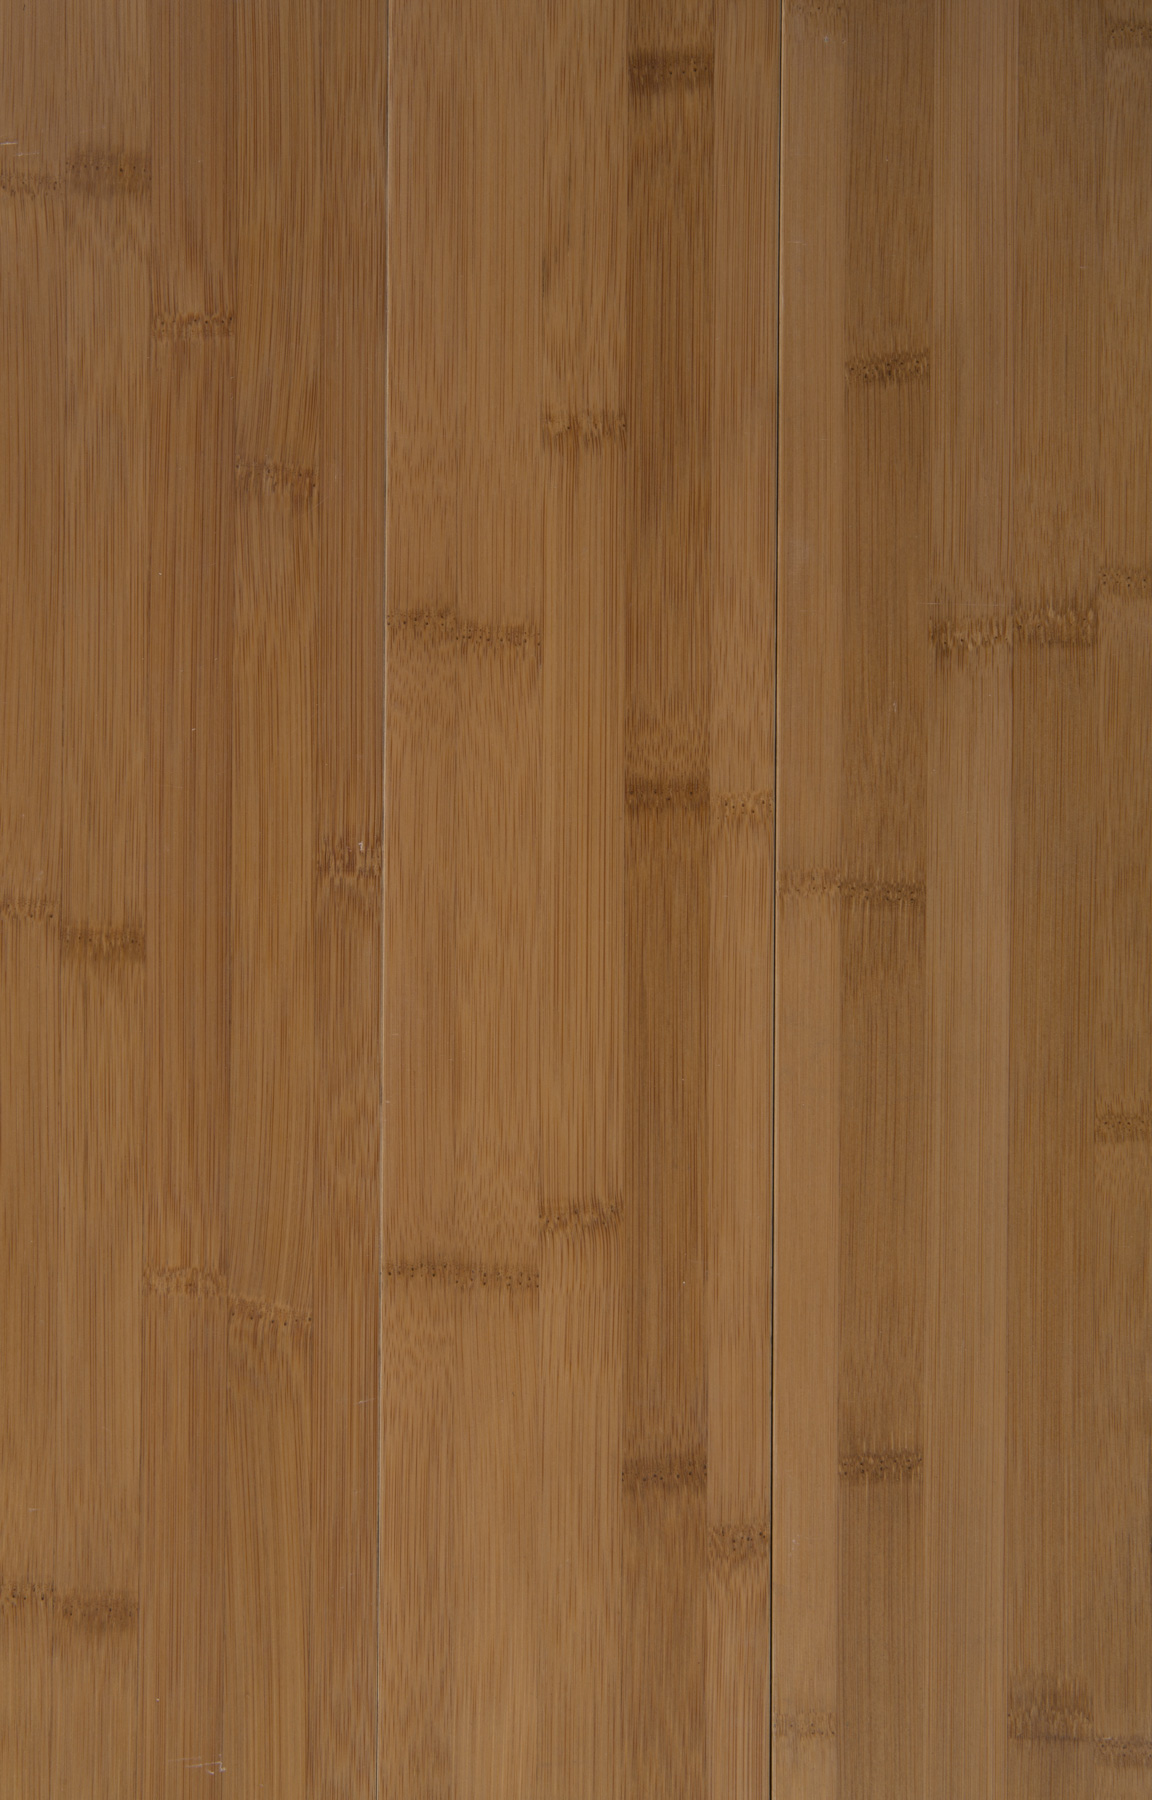 maderas-terramont-bamboo-carbonizado-horizontal-obscuro